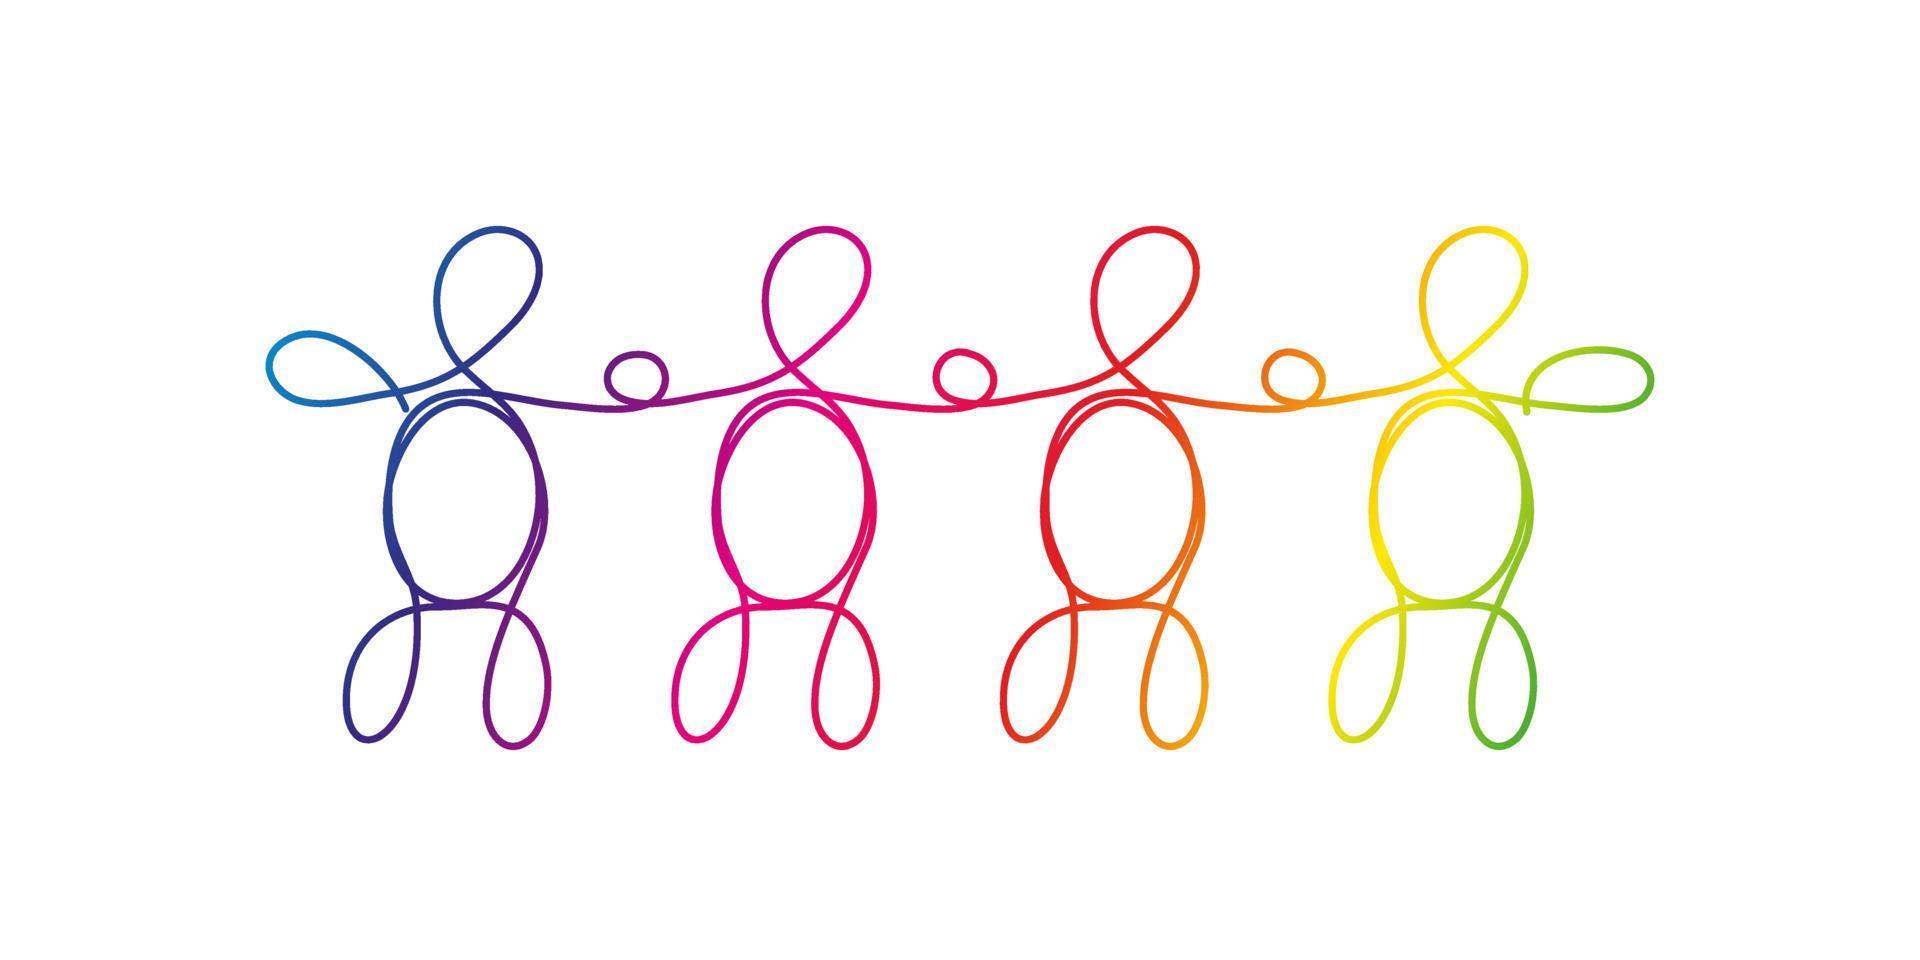 line art mångfald, hbtq-koncept. en grupp på fyra olika personer ritade med en linje, regnbågsfärger på vitt. vektor